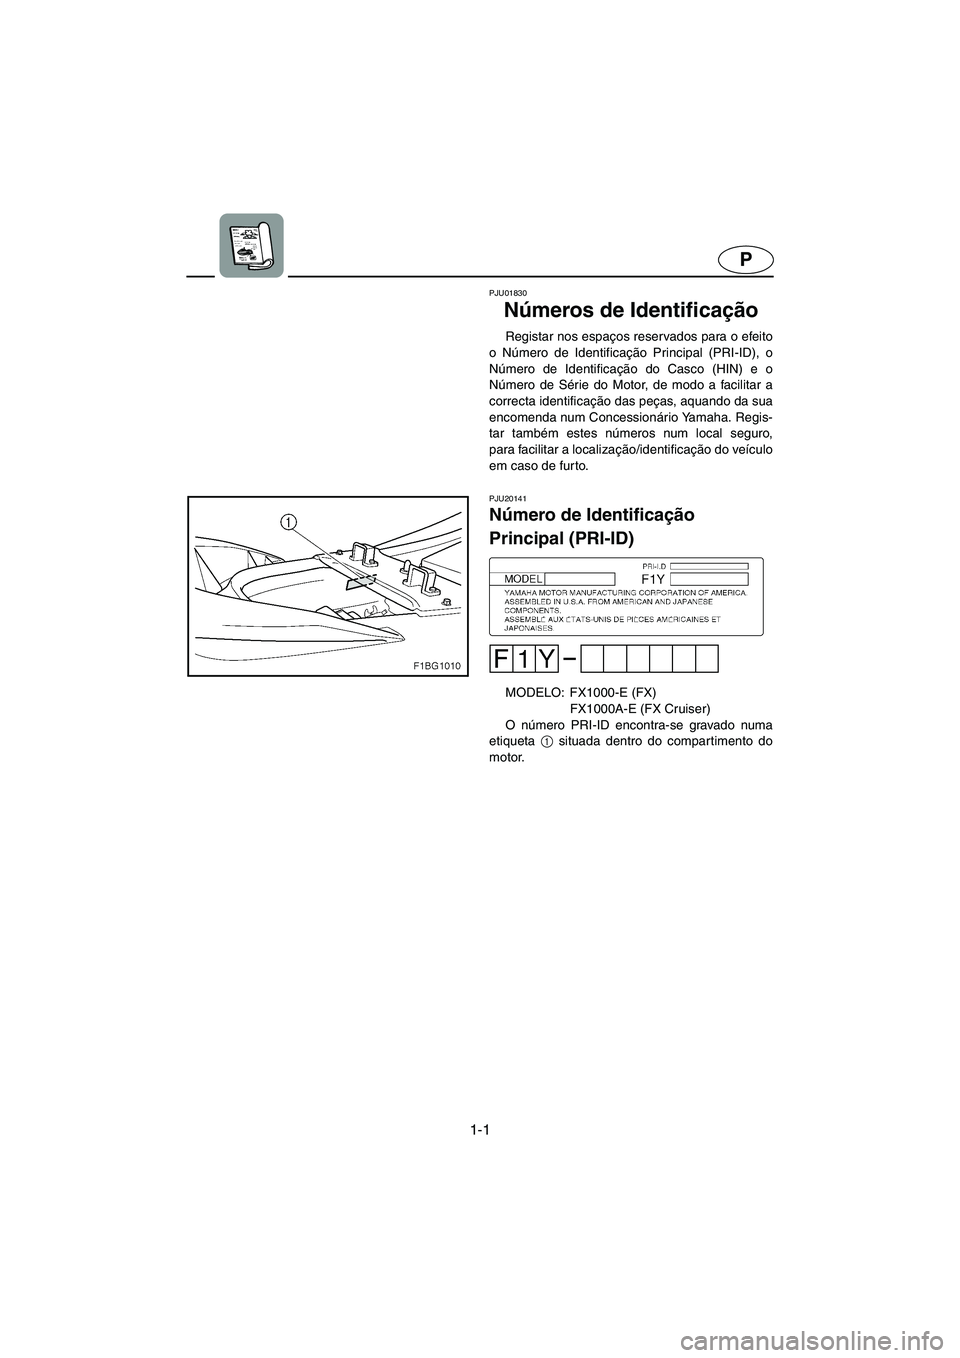 YAMAHA FX CRUISER 2006  Manual de utilização (in Portuguese) 1-1
P
PJU01830 
Números de Identificação  
Registar nos espaços reservados para o efeito
o Número de Identificação Principal (PRI-ID), o
Número de Identificação do Casco (HIN) e o
Número de